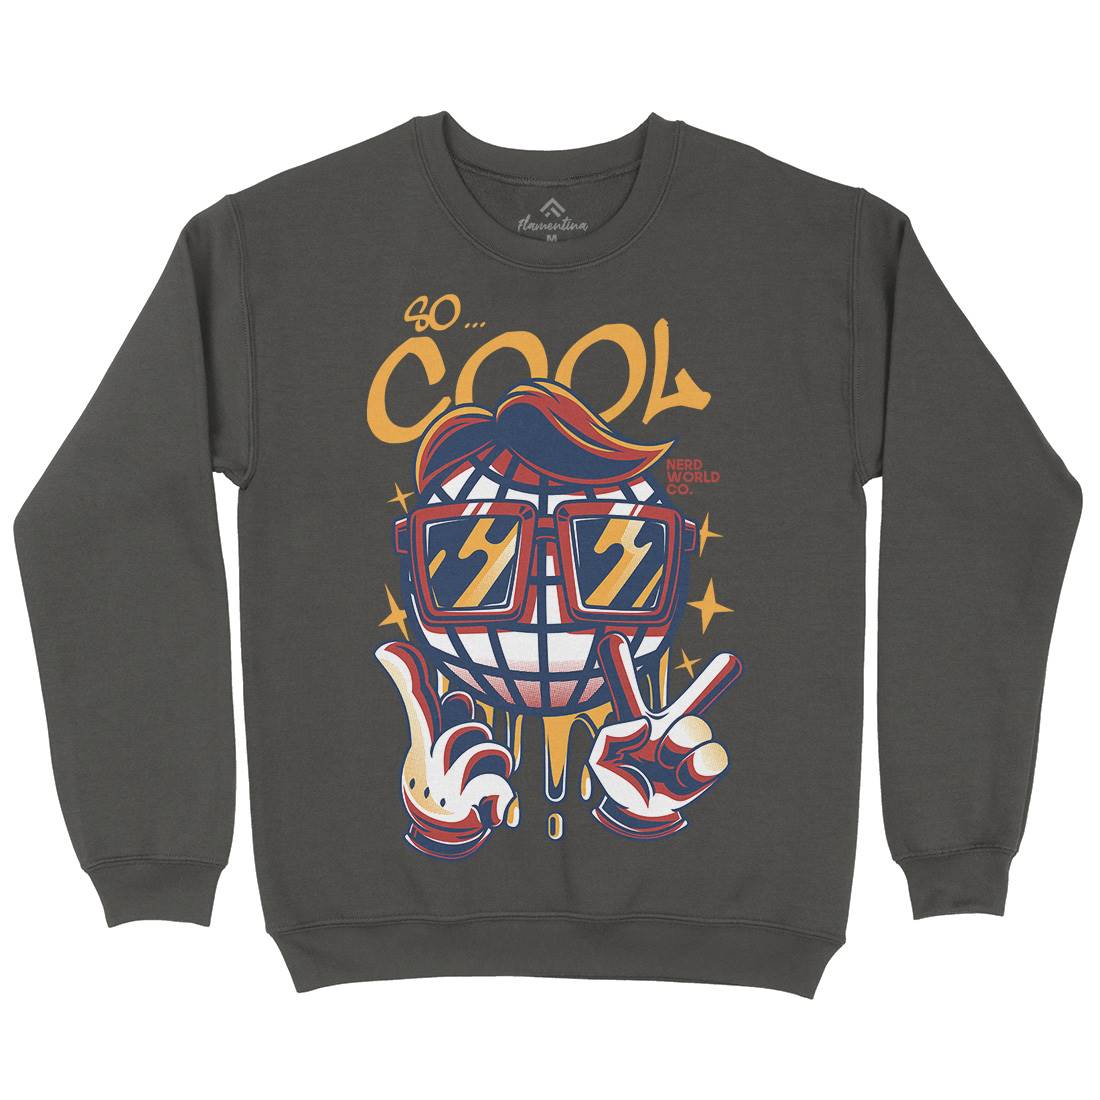 So Cool Kids Crew Neck Sweatshirt Geek D824